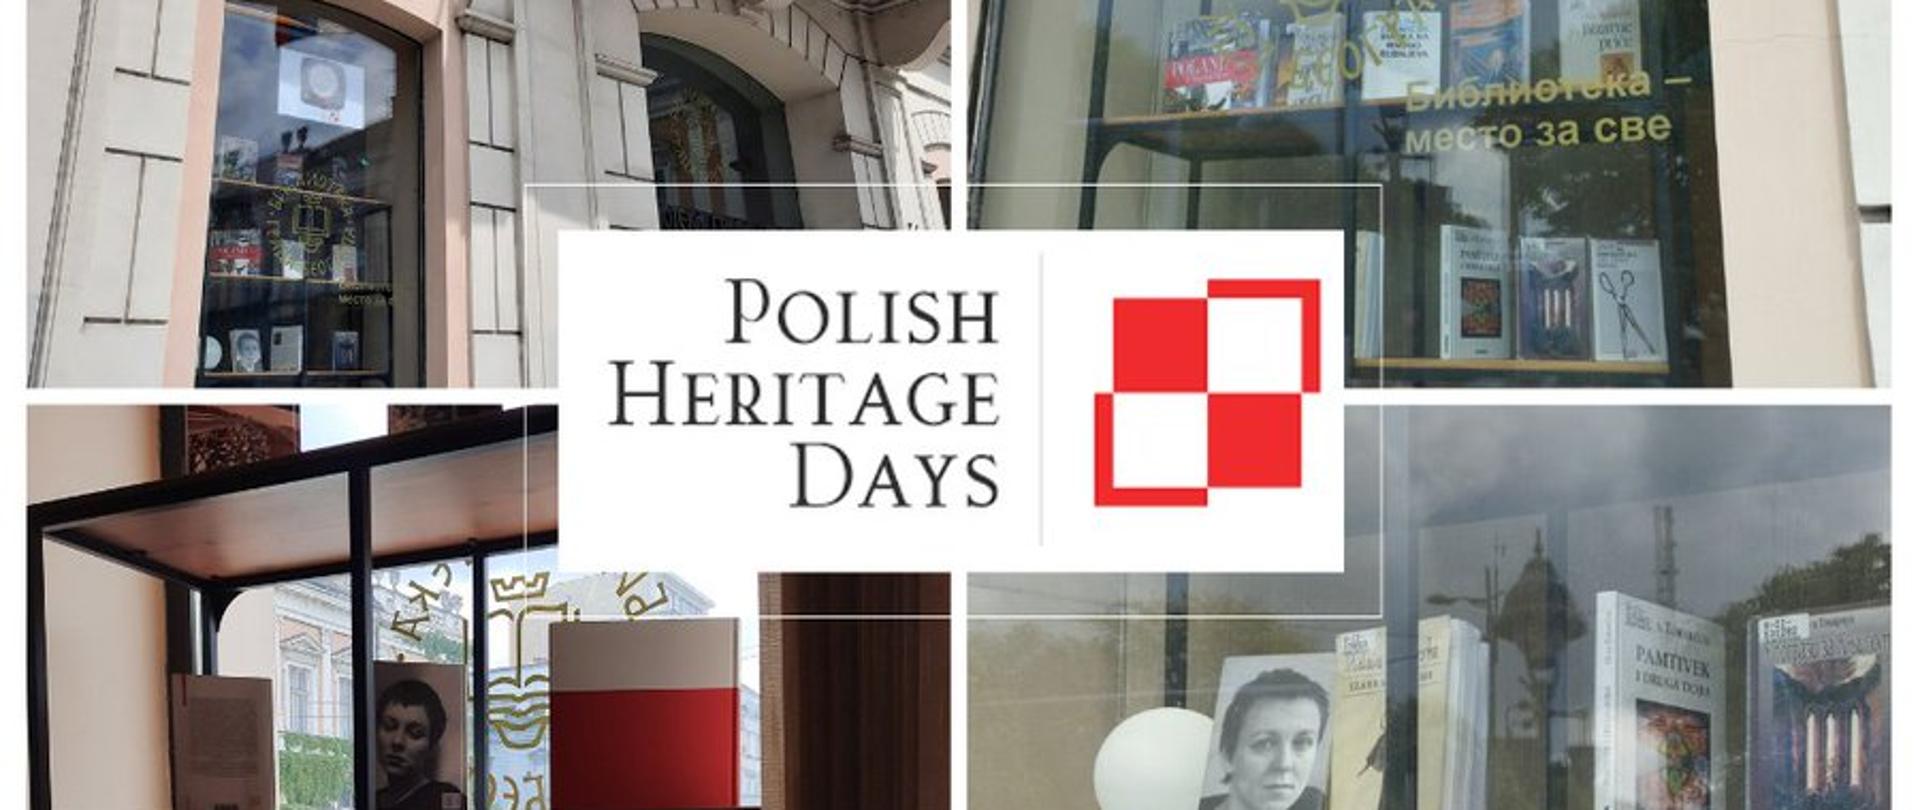 W związku z obchodzonymi w maju Dniami Polskiego Dziedzictwa, Ambasada RP w Belgradzie przygotowała wraz z Miejską Biblioteką Publiczną (MBP) w Belgradzie okolicznościową ekspozycję książek polskich autorów oraz pozycji poświęconych Polsce.